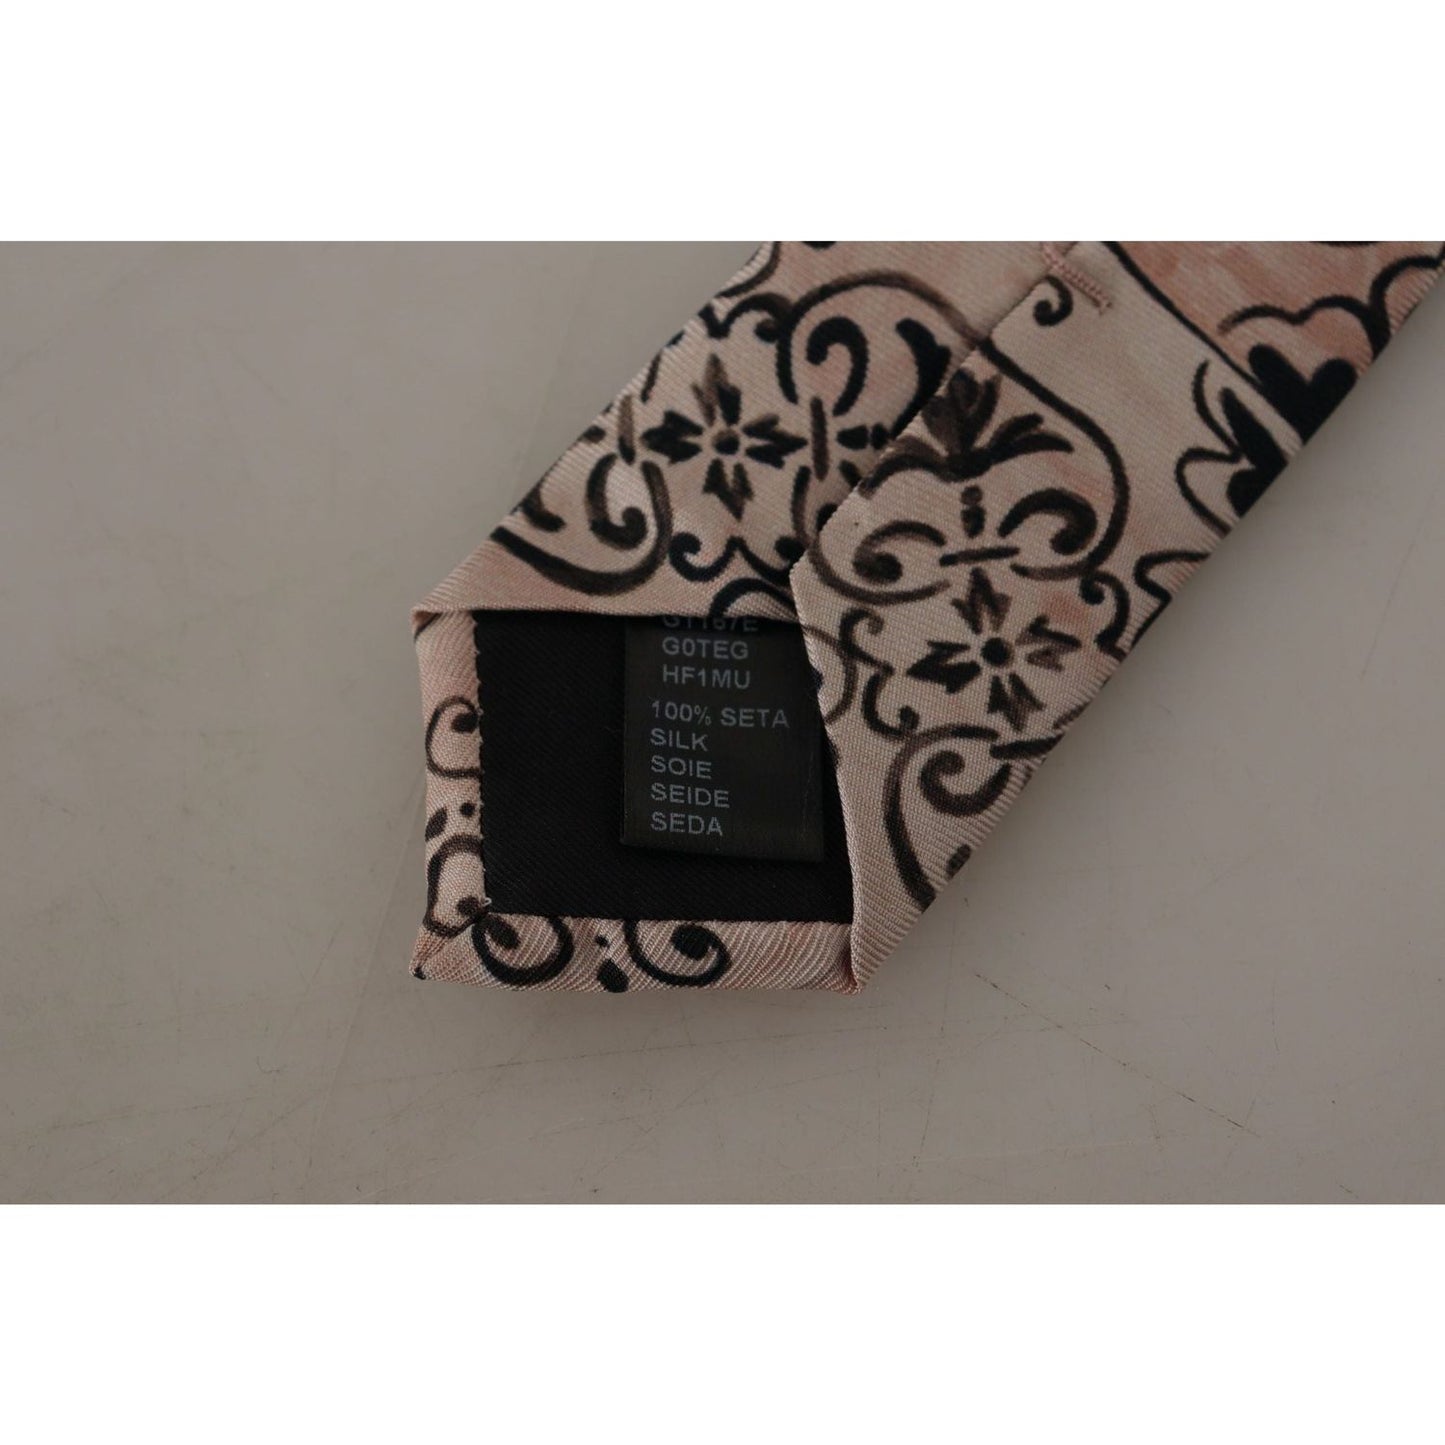 Dolce & Gabbana Stunning Silk Gentleman's Tie in Rich Brown beige-fantasy-pattern-necktie-accessory-black IMG_3993-scaled-ab96bc2c-ba7.jpg